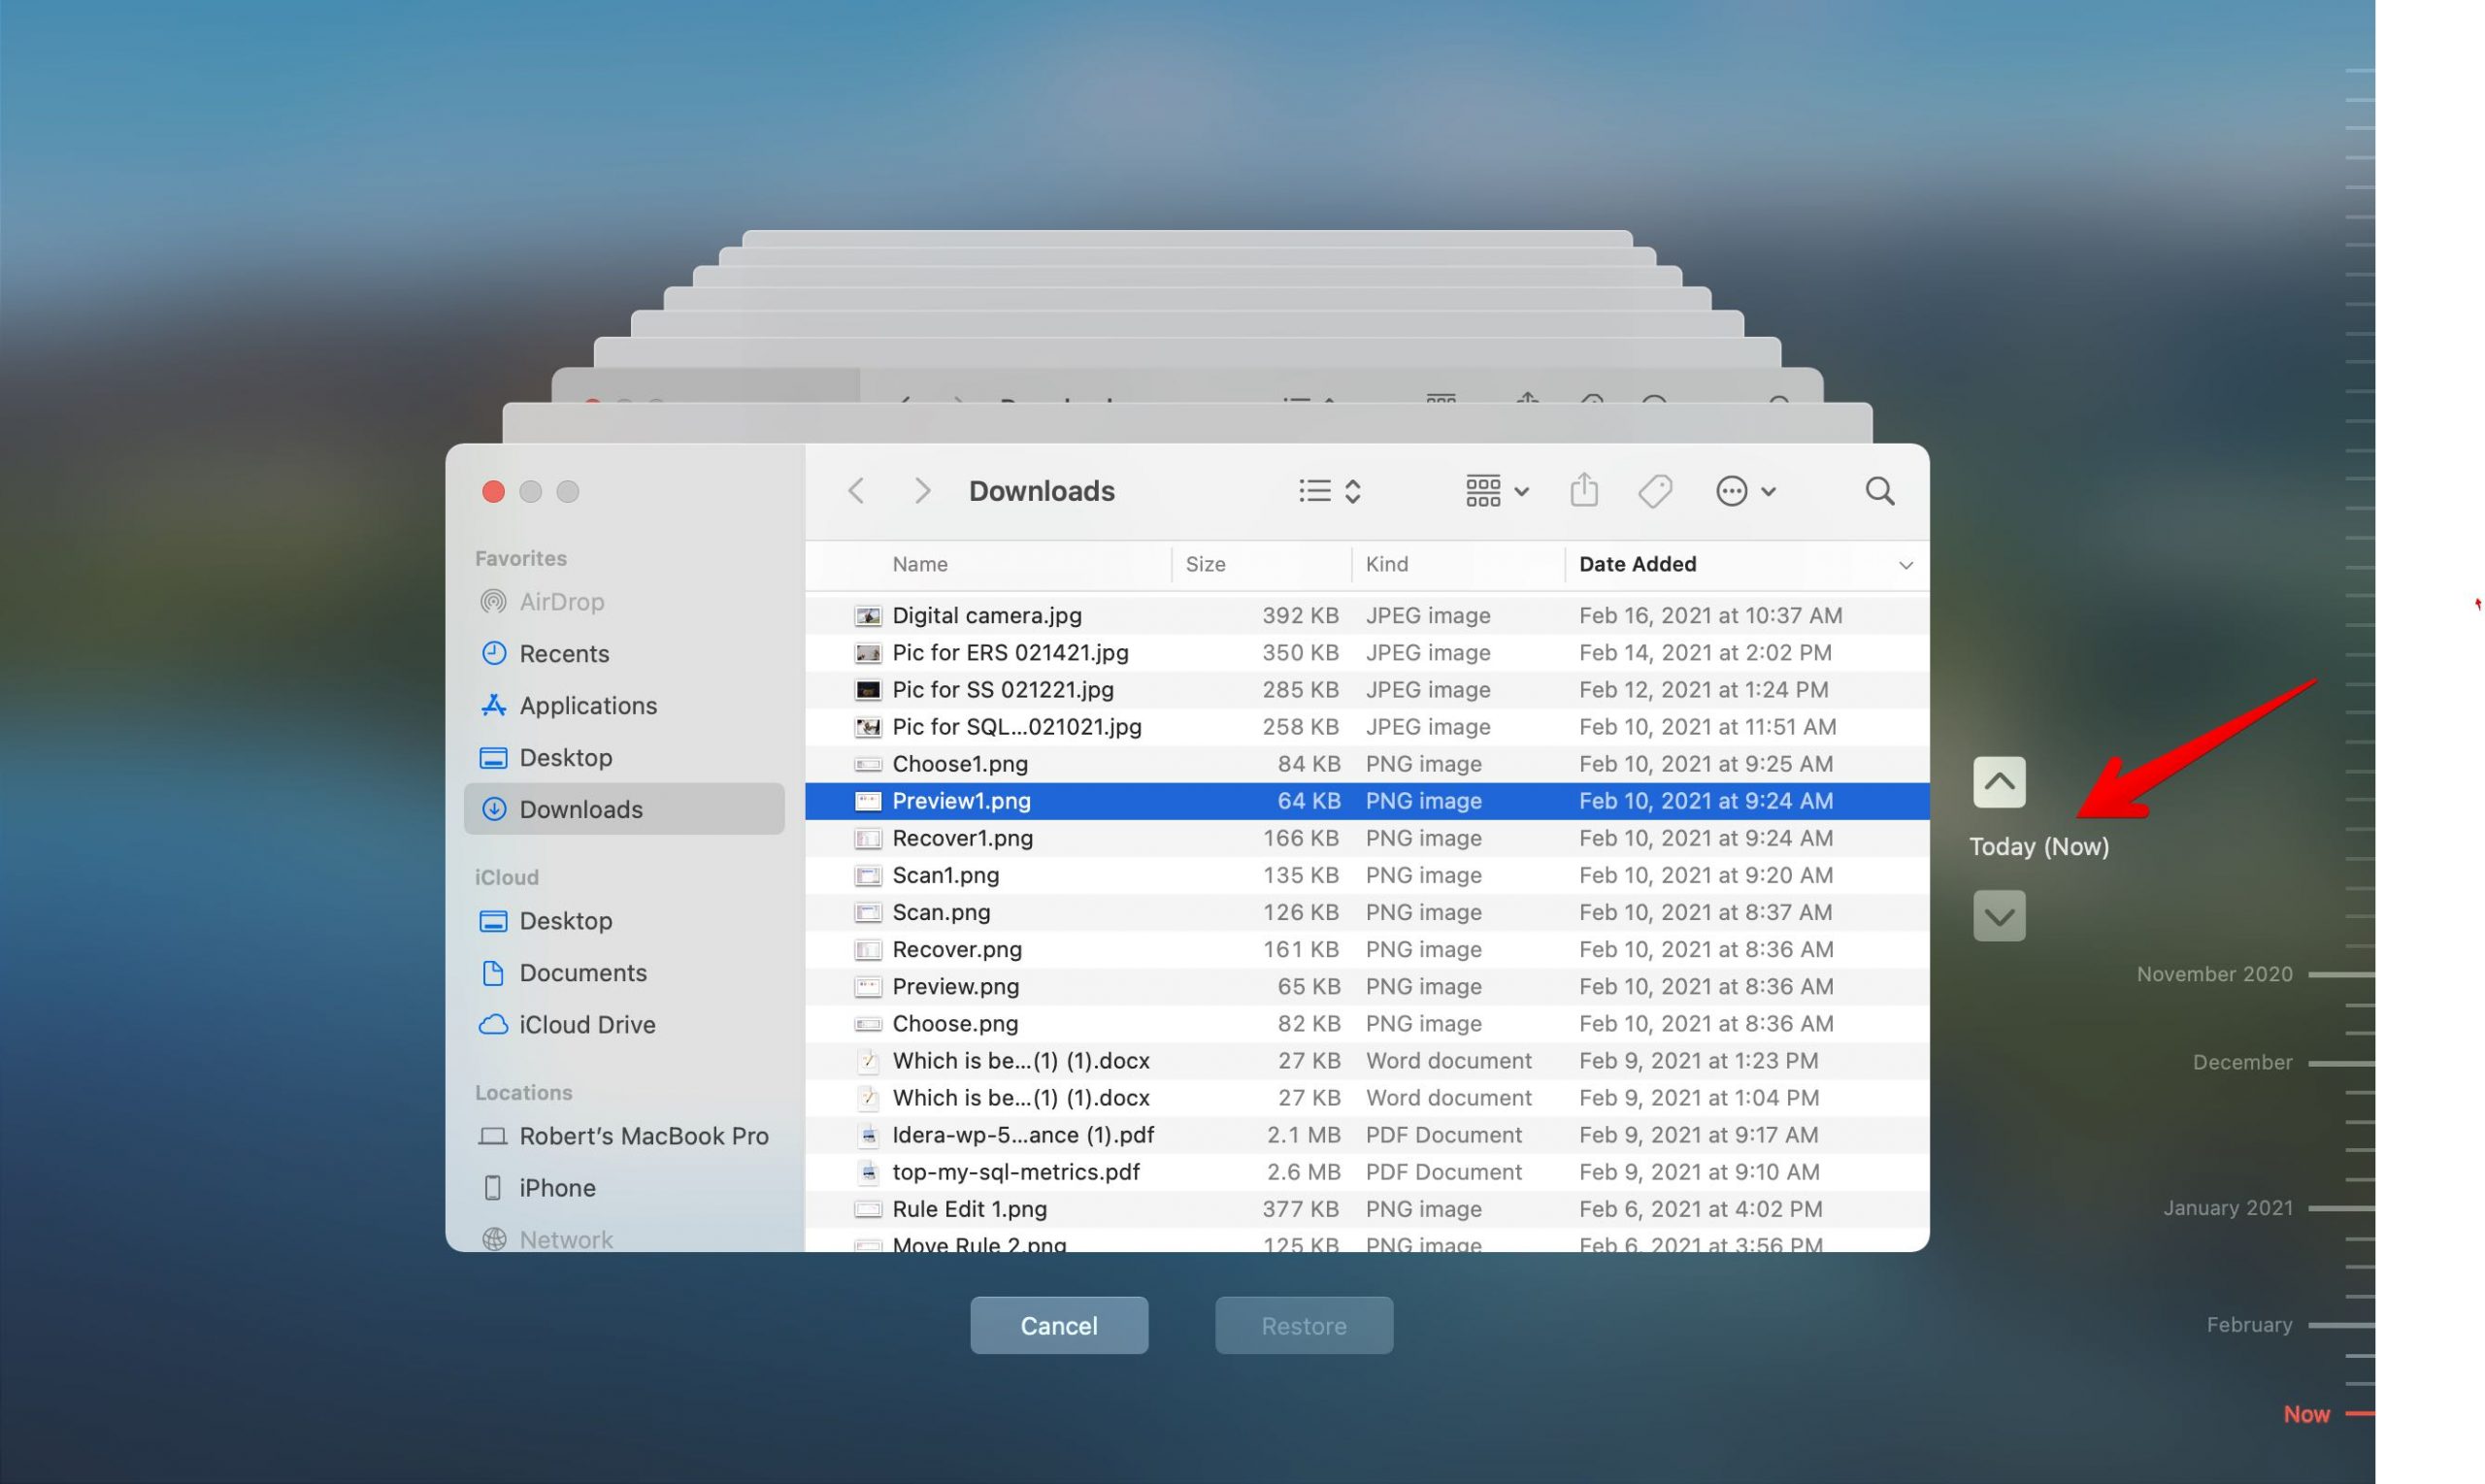 mac time machine restore files